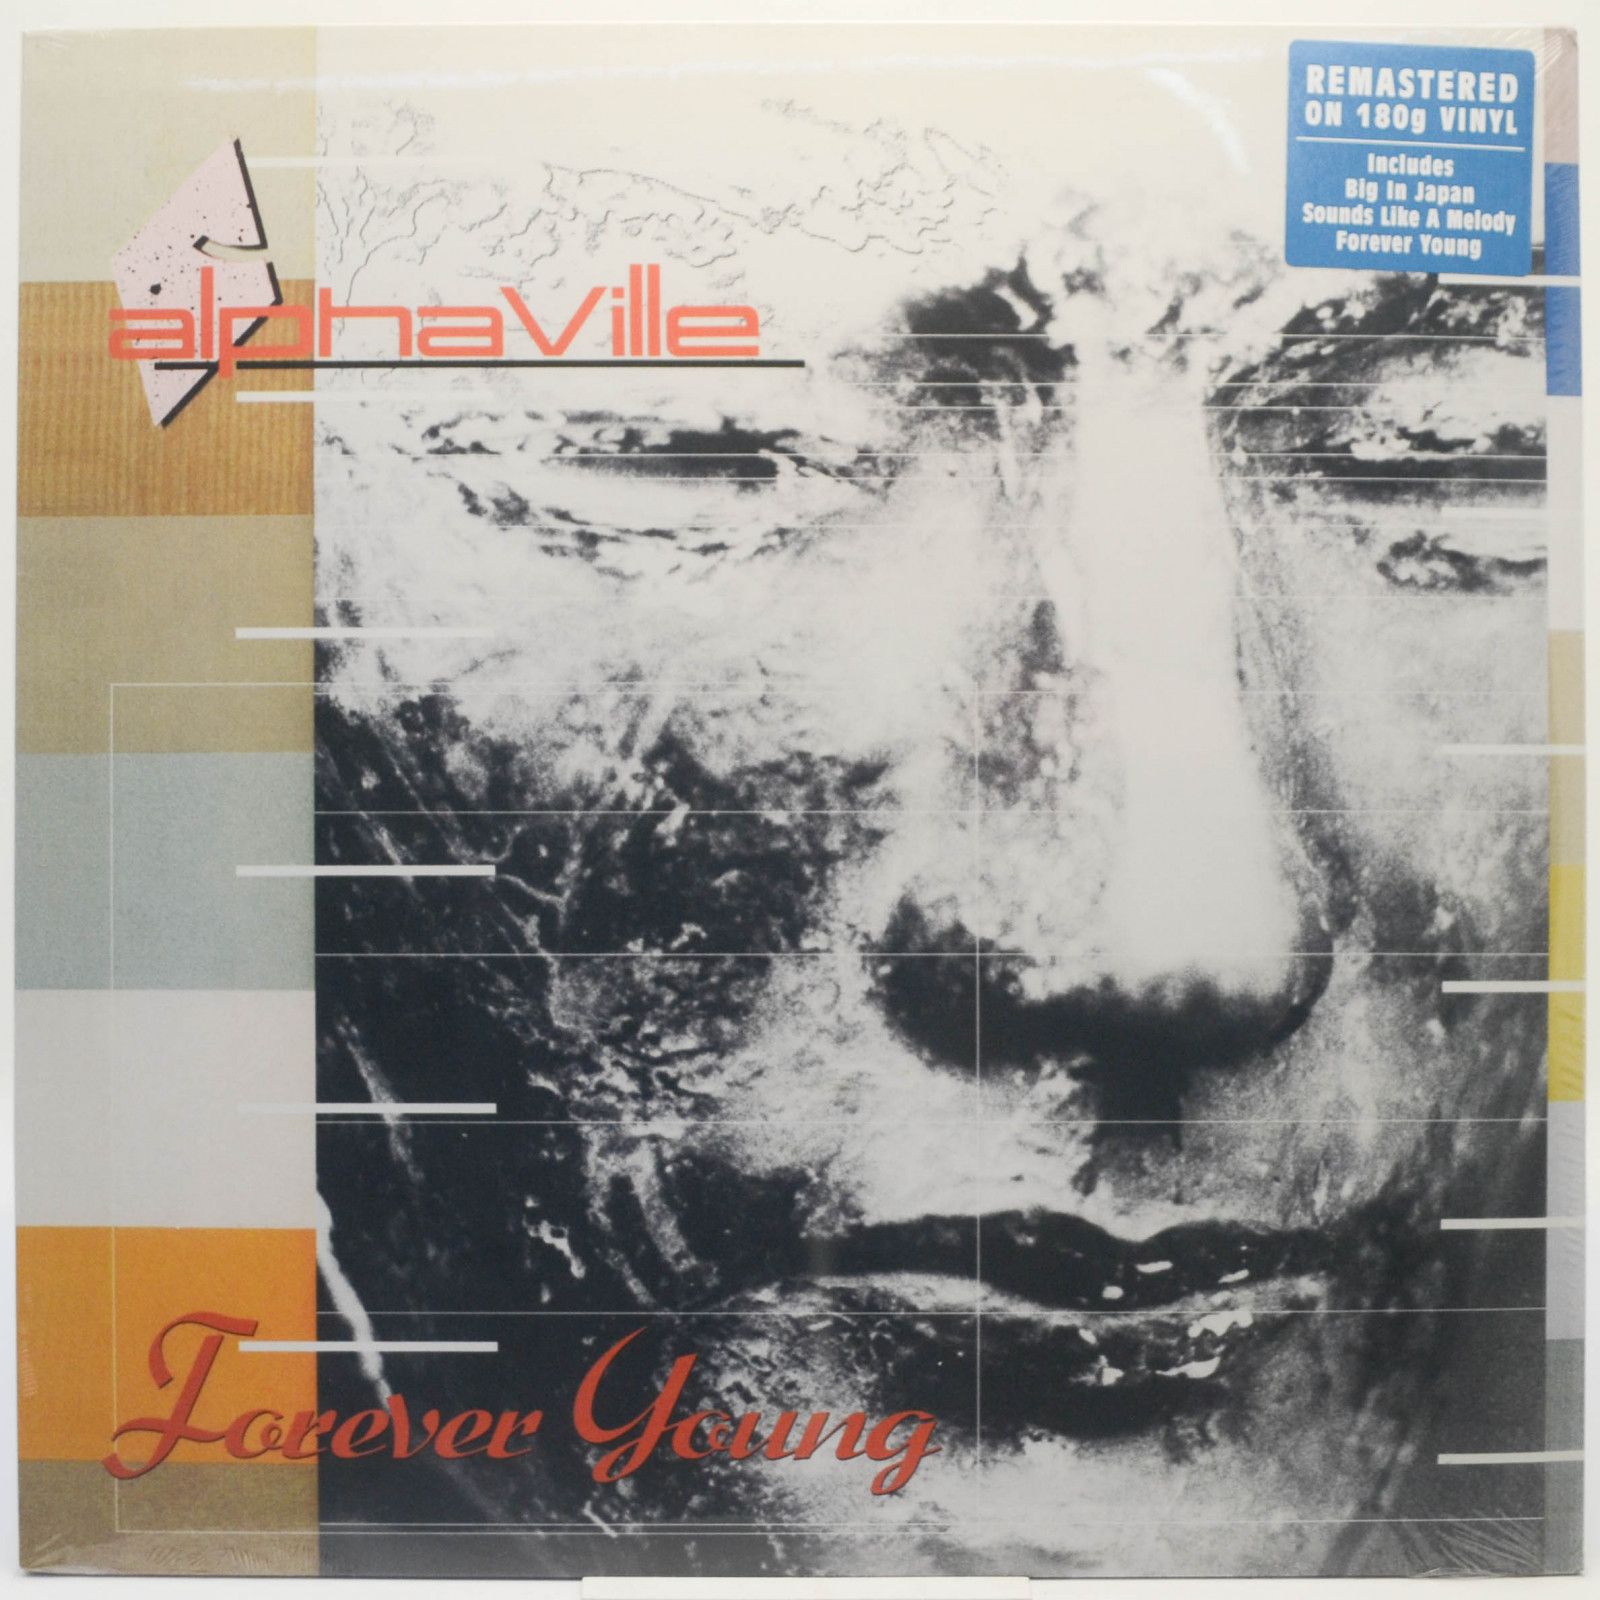 Alphaville — Forever Young, 1984